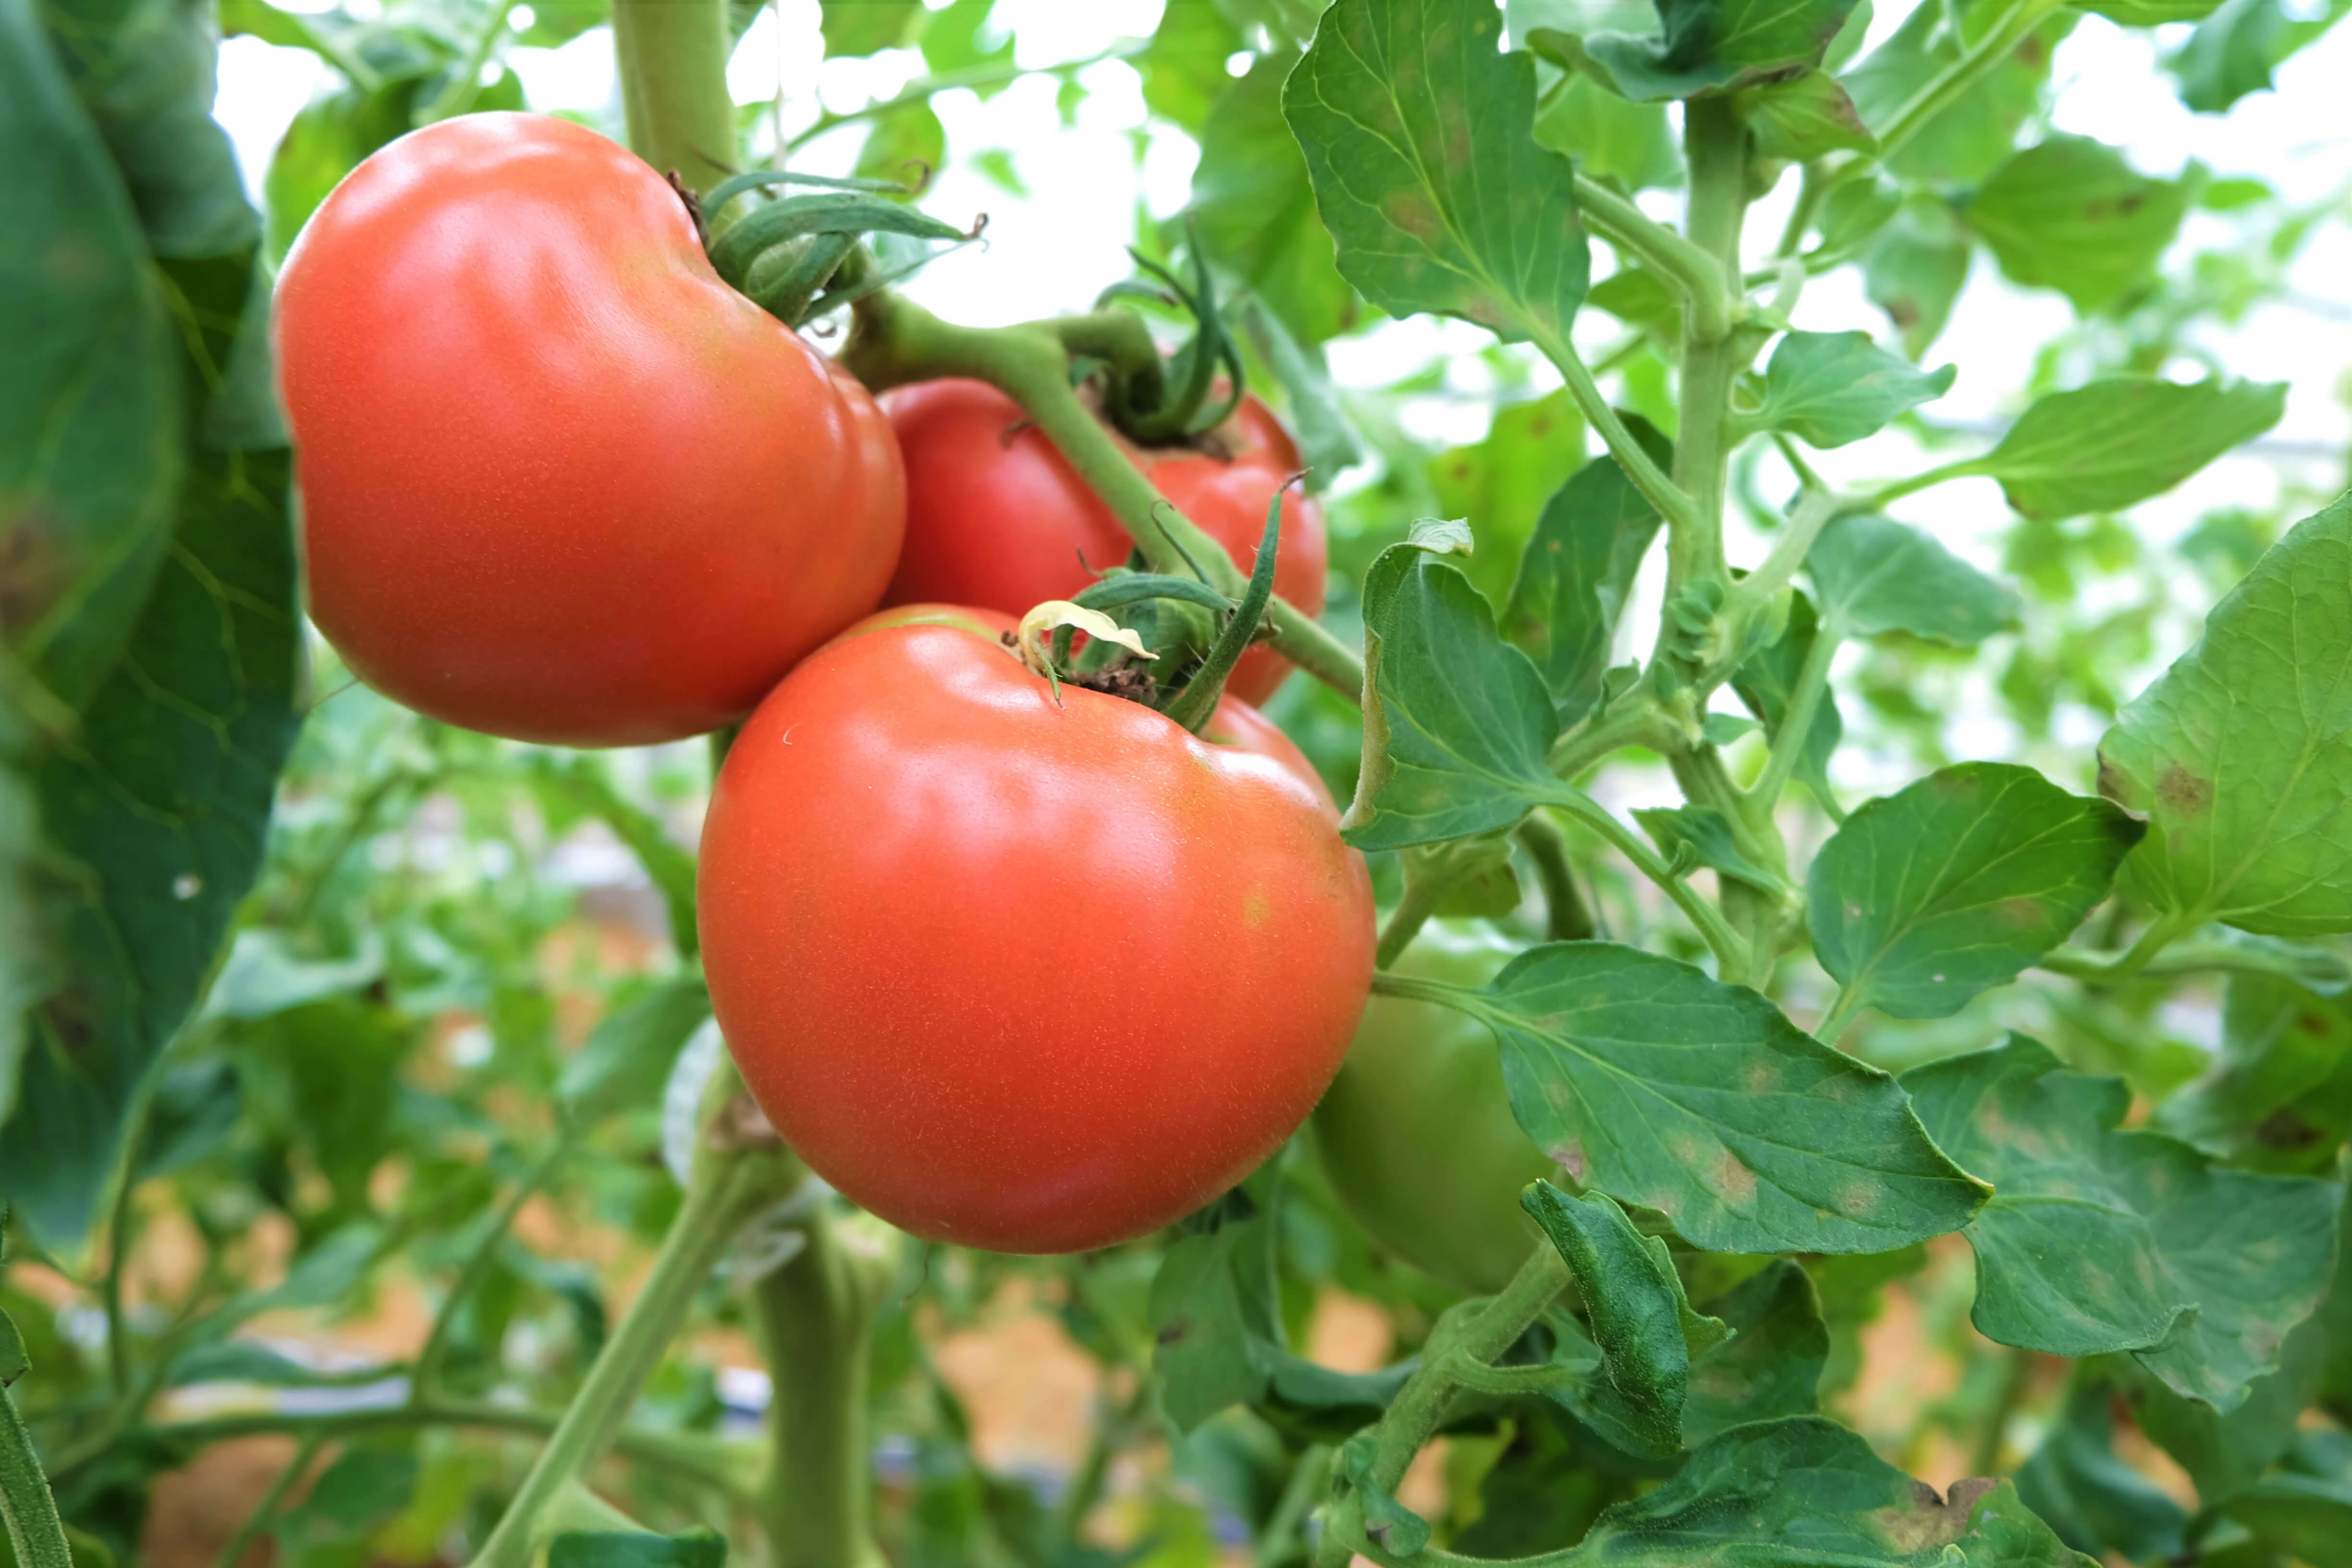 脱サラ新規就農者のトマト栽培 久保田尚樹 加賀でかがやく